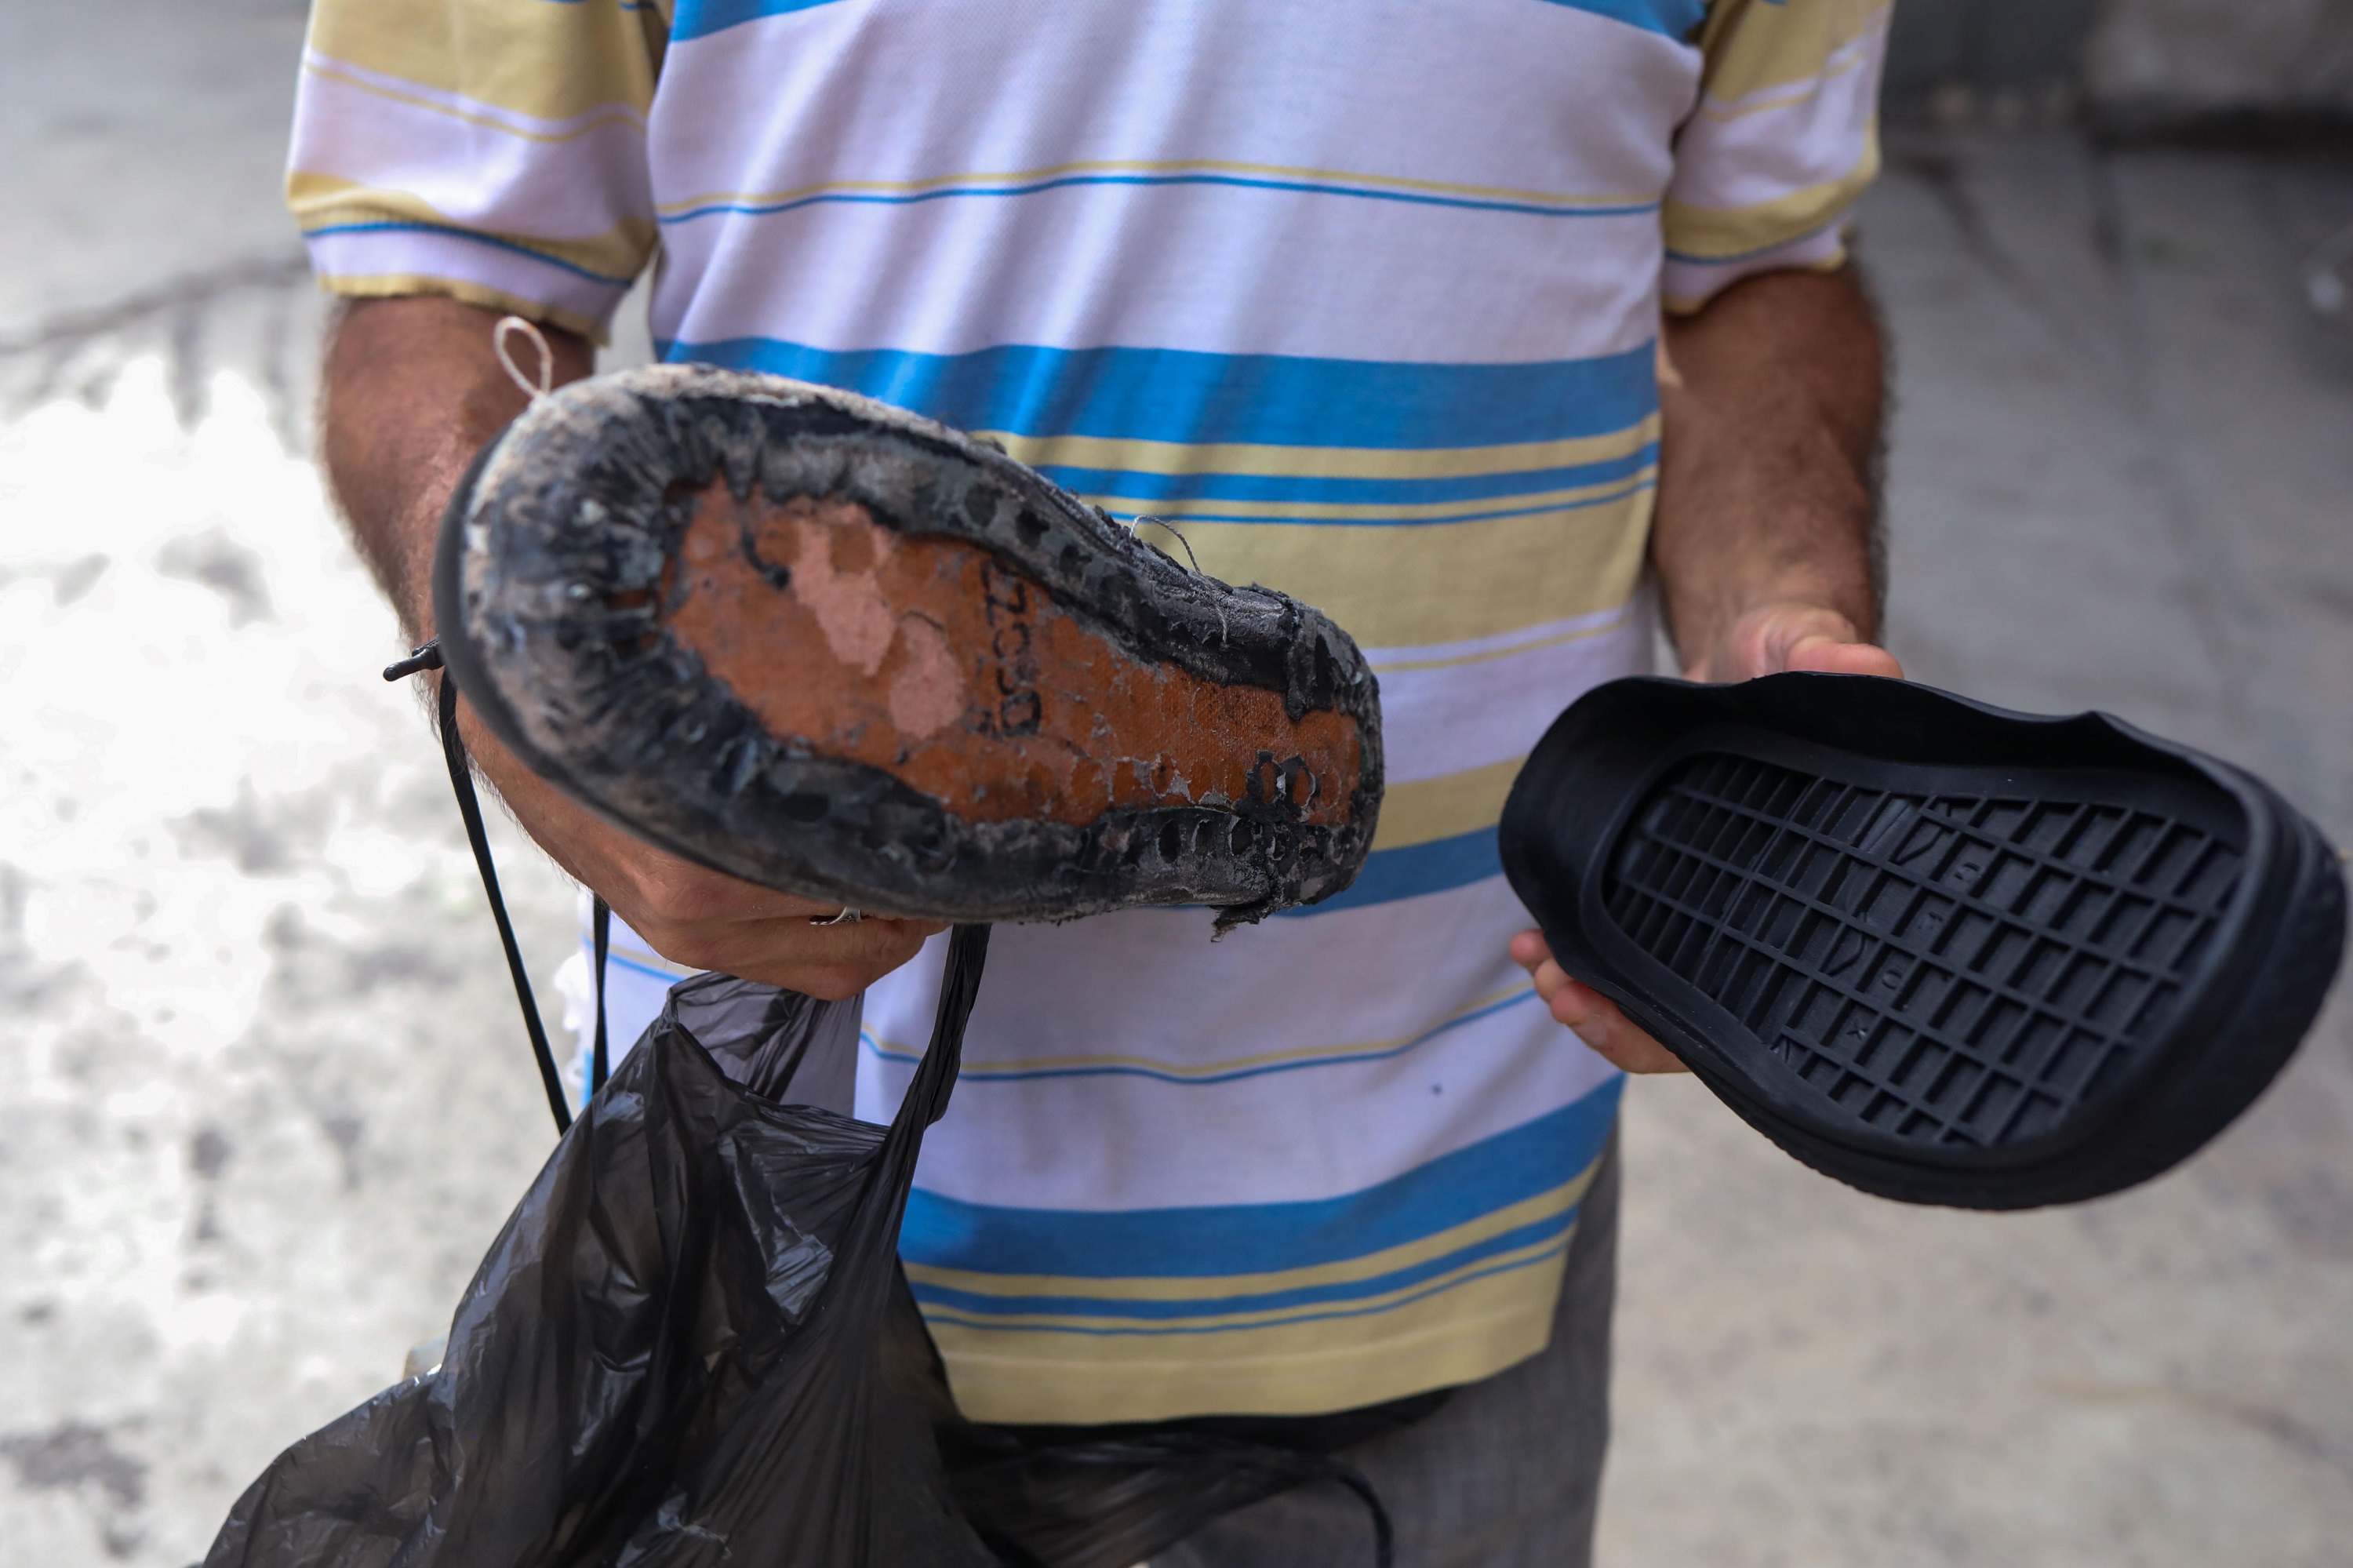 Testigo Directo: Ingenio ante la crisis, venezolanos hacen suelas de zapatos con cauchos (Video)